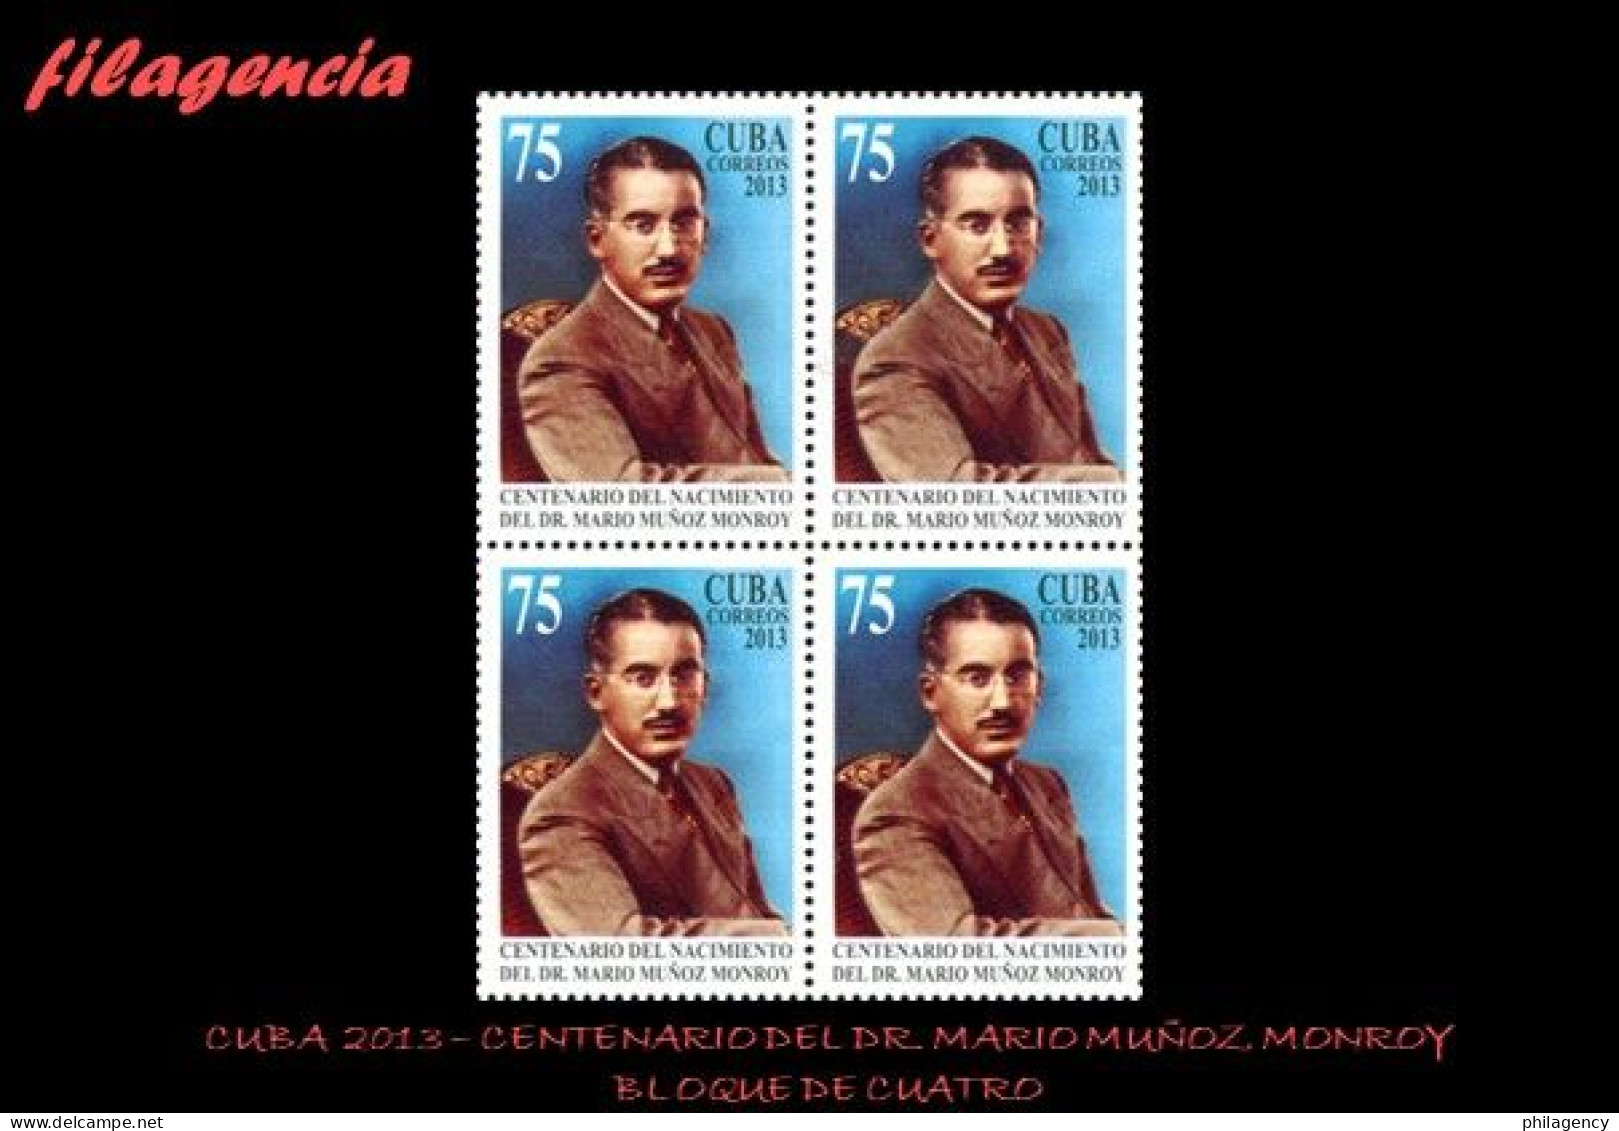 CUBA. BLOQUES DE CUATRO. 2013-27 CENTENARIO DEL DR. MARIO MUÑOZ MONROY - Unused Stamps